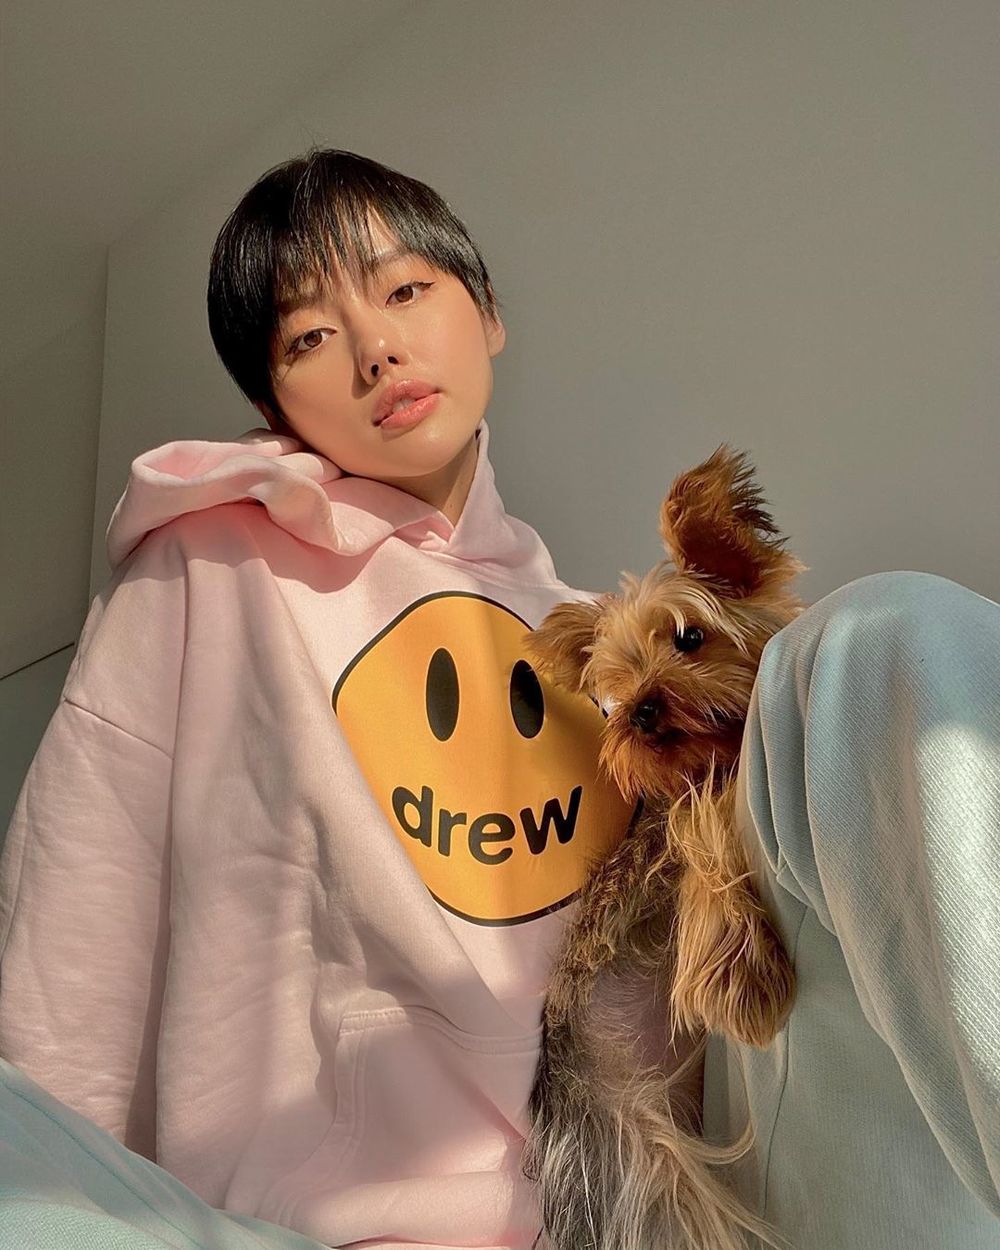  
Trong những ngày ở nhà tự cách ly, chú chó Yoyo là người bạn duy nhất của Khánh Linh. Cô nàng đã "lên đồ" và thực hiện nhiều shoot ảnh cùng chú cún của mình.(Ảnh: Instahram nhân vật)